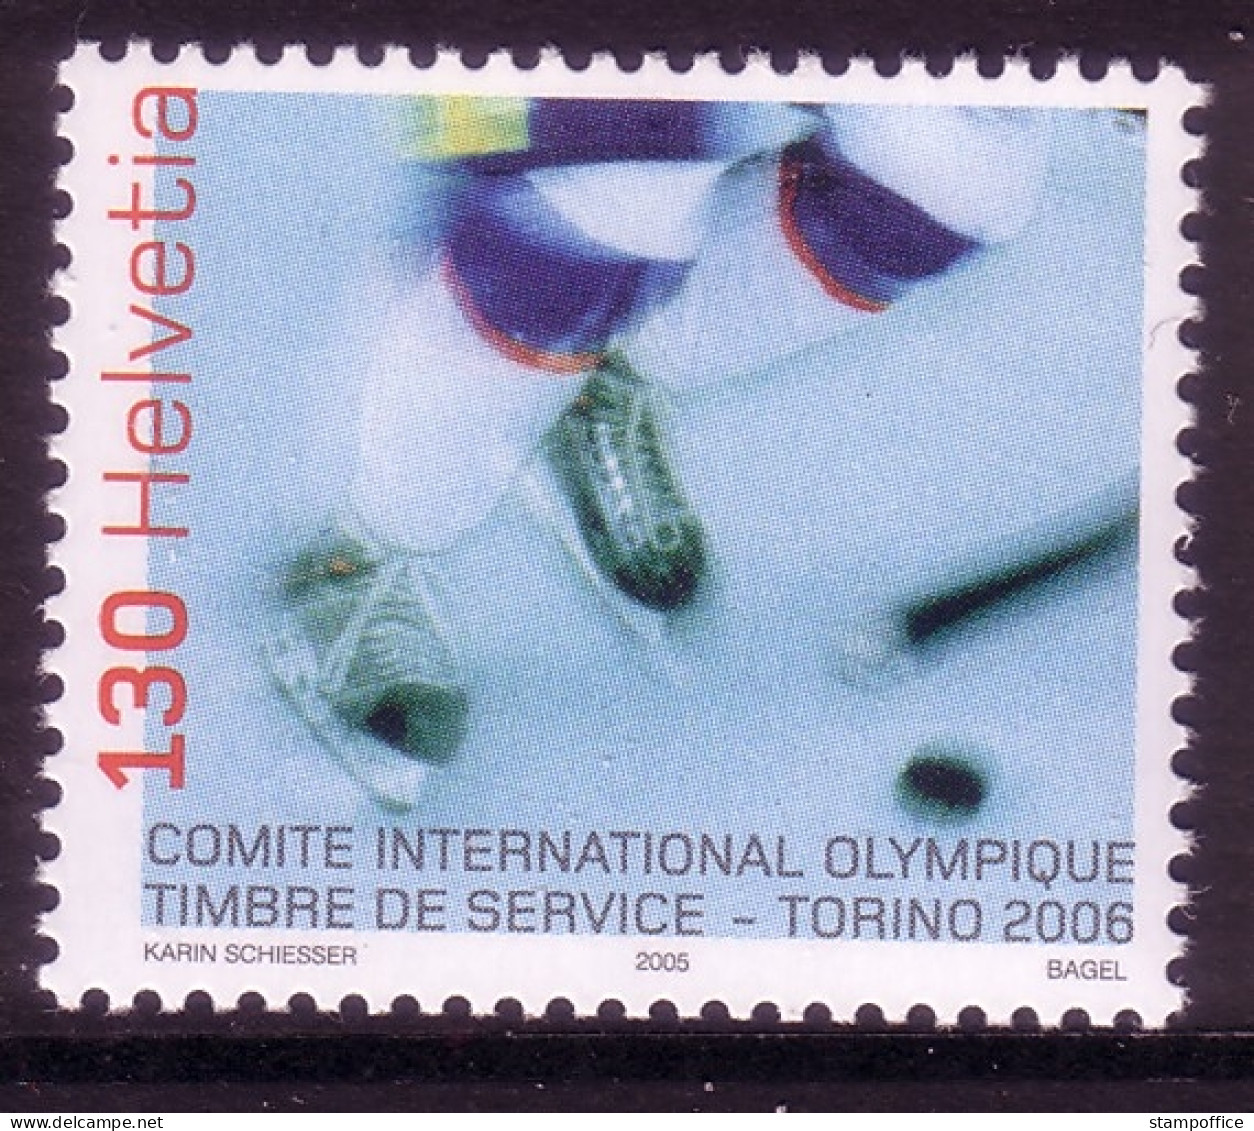 SCHWEIZ INTERNATIONALES OLYMPISCHES KOMITEE (IOC) MI-NR. 5 POSTFRISCH(MINT) OLYMPIADE 2006 TURIN EISHOCKEY - Hiver 2006: Torino